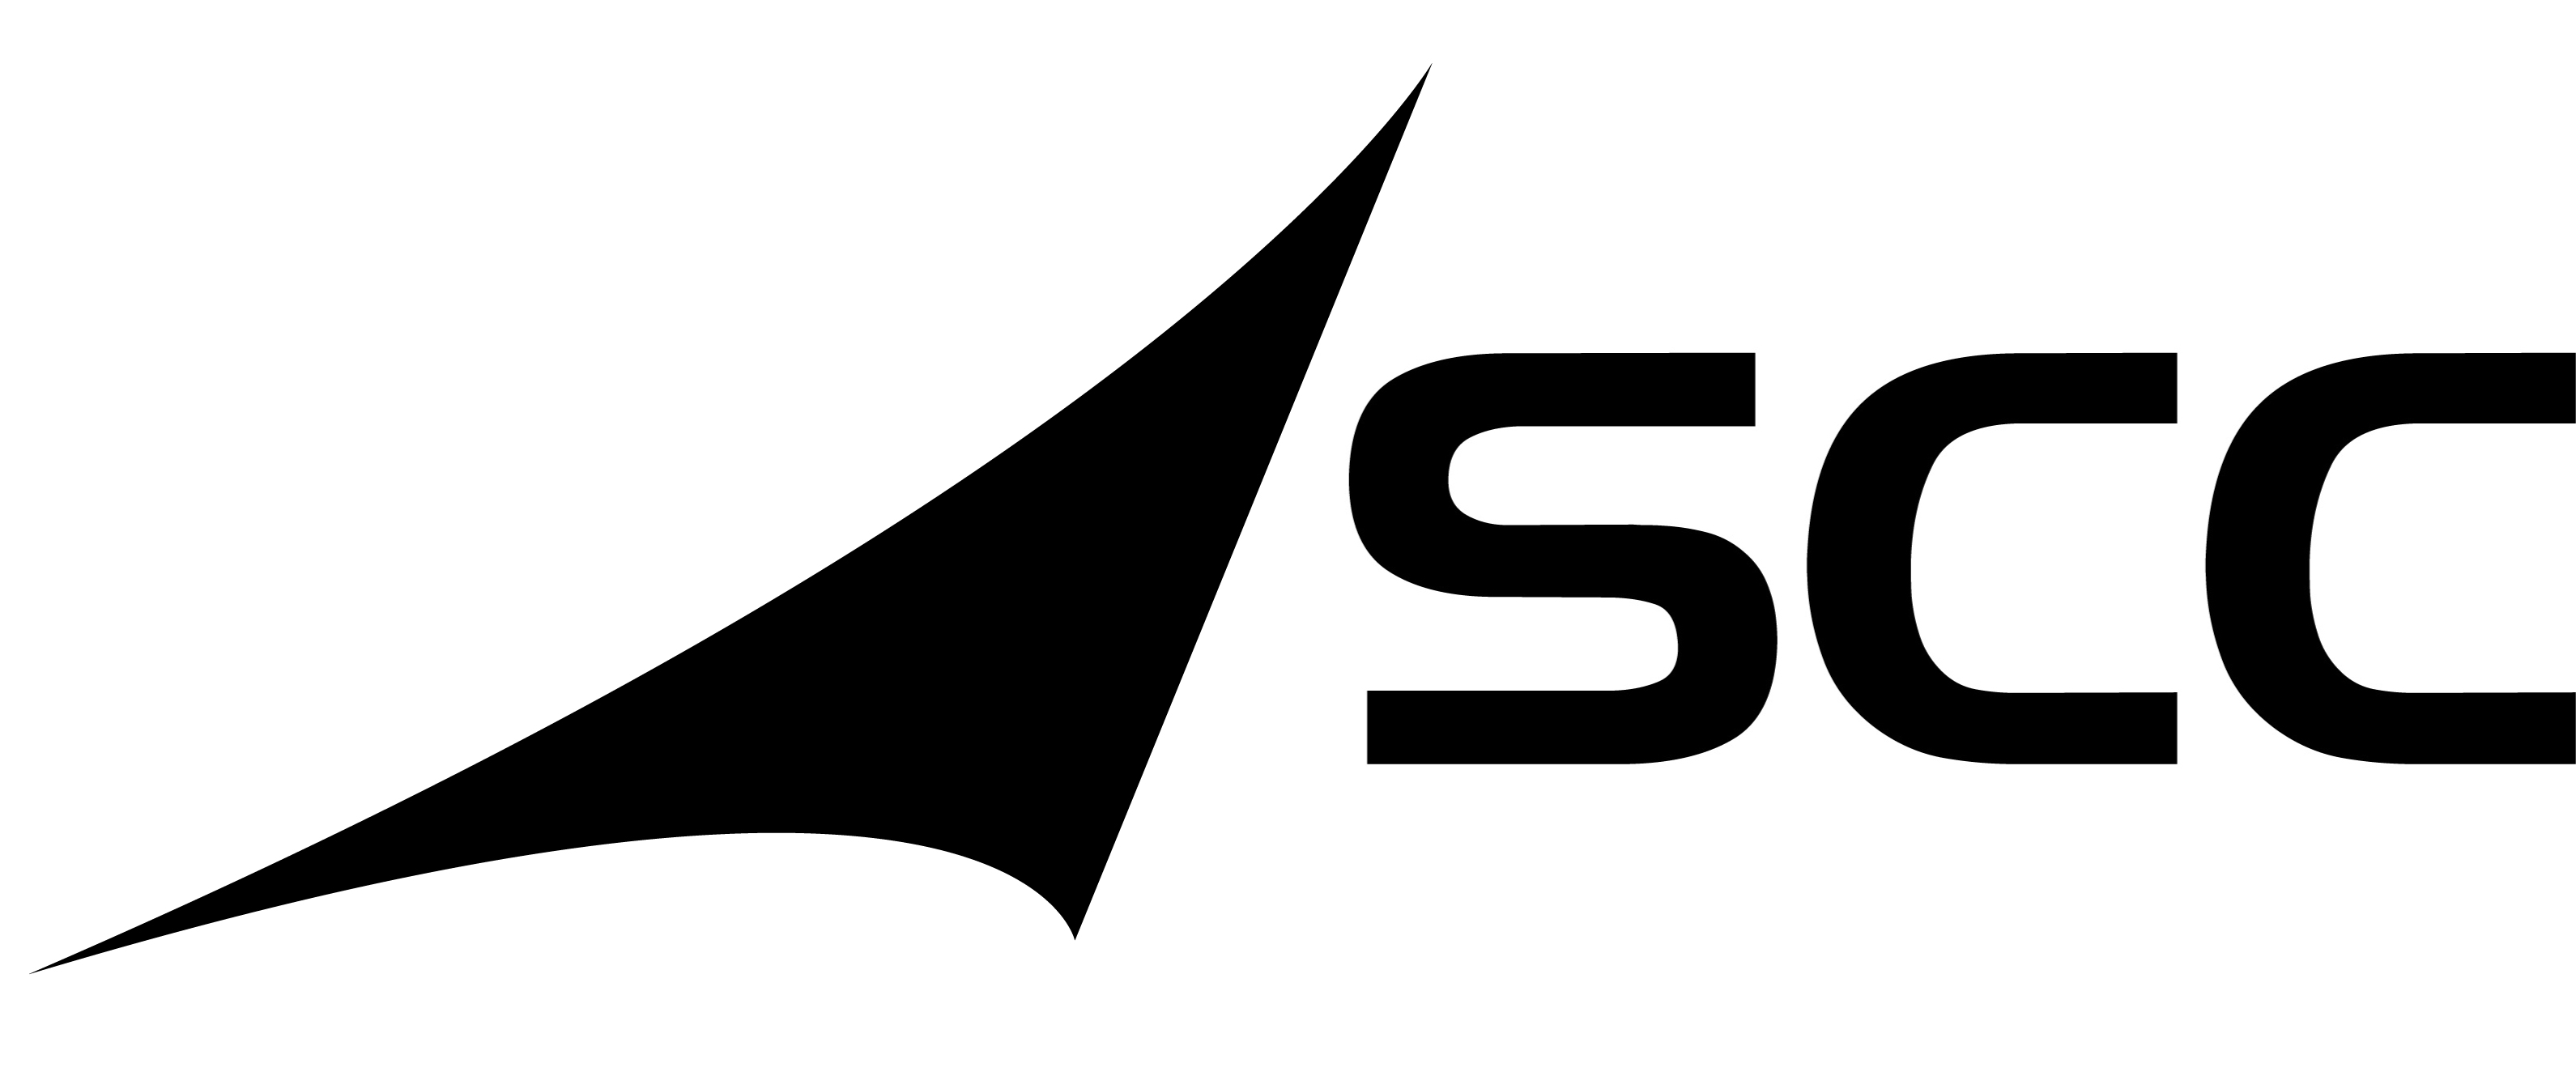 Logo SCC